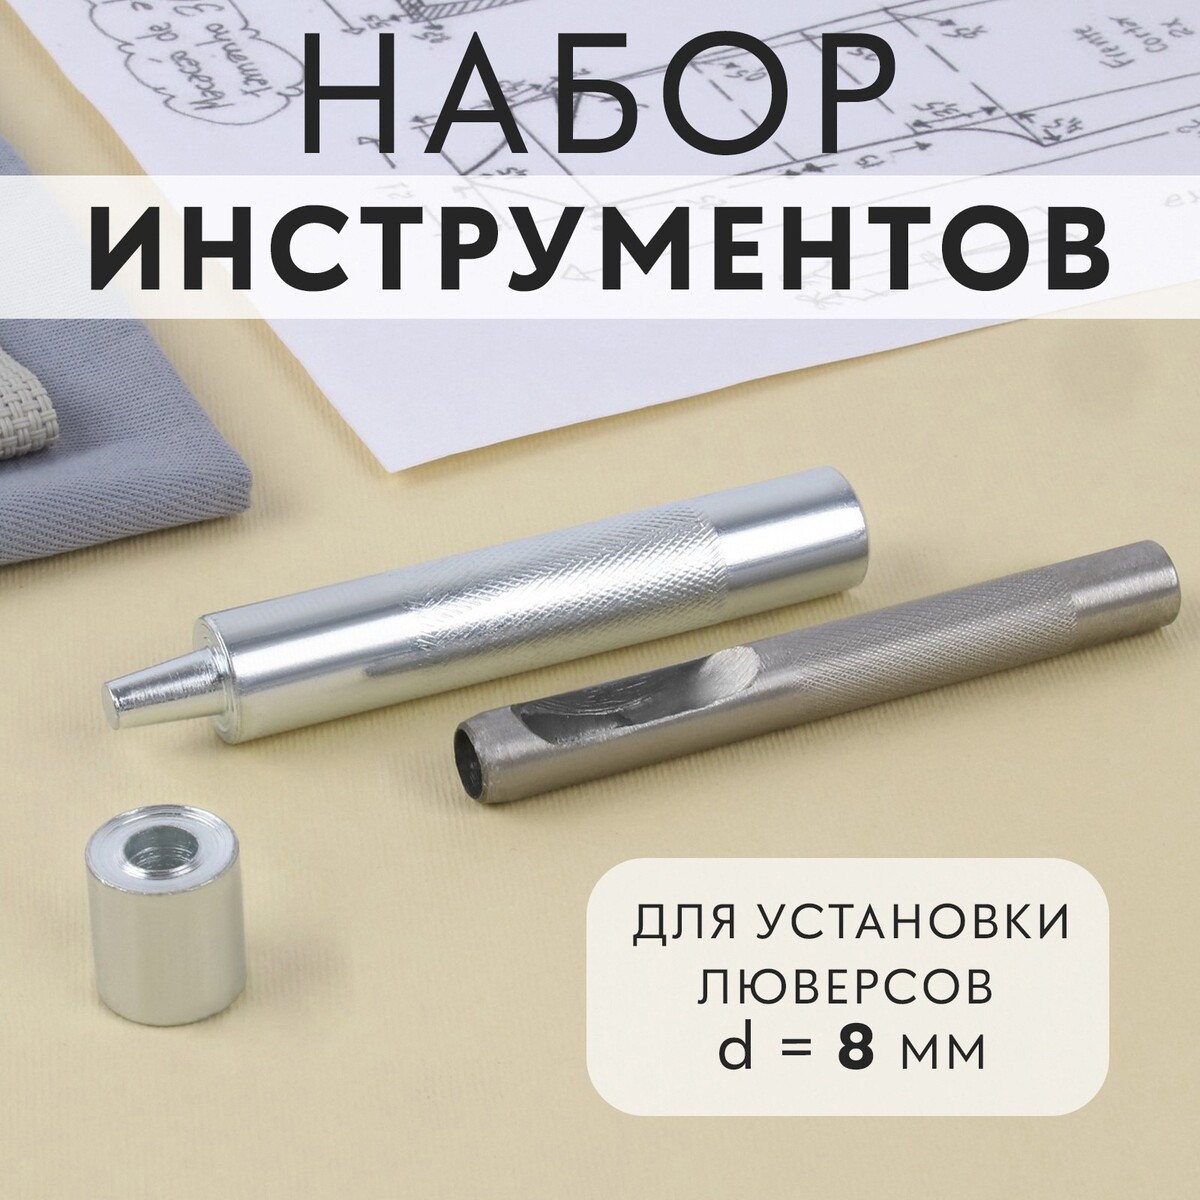 Набор инструментов для ручной установки люверсов №600, d = 8 мм, с колодцем